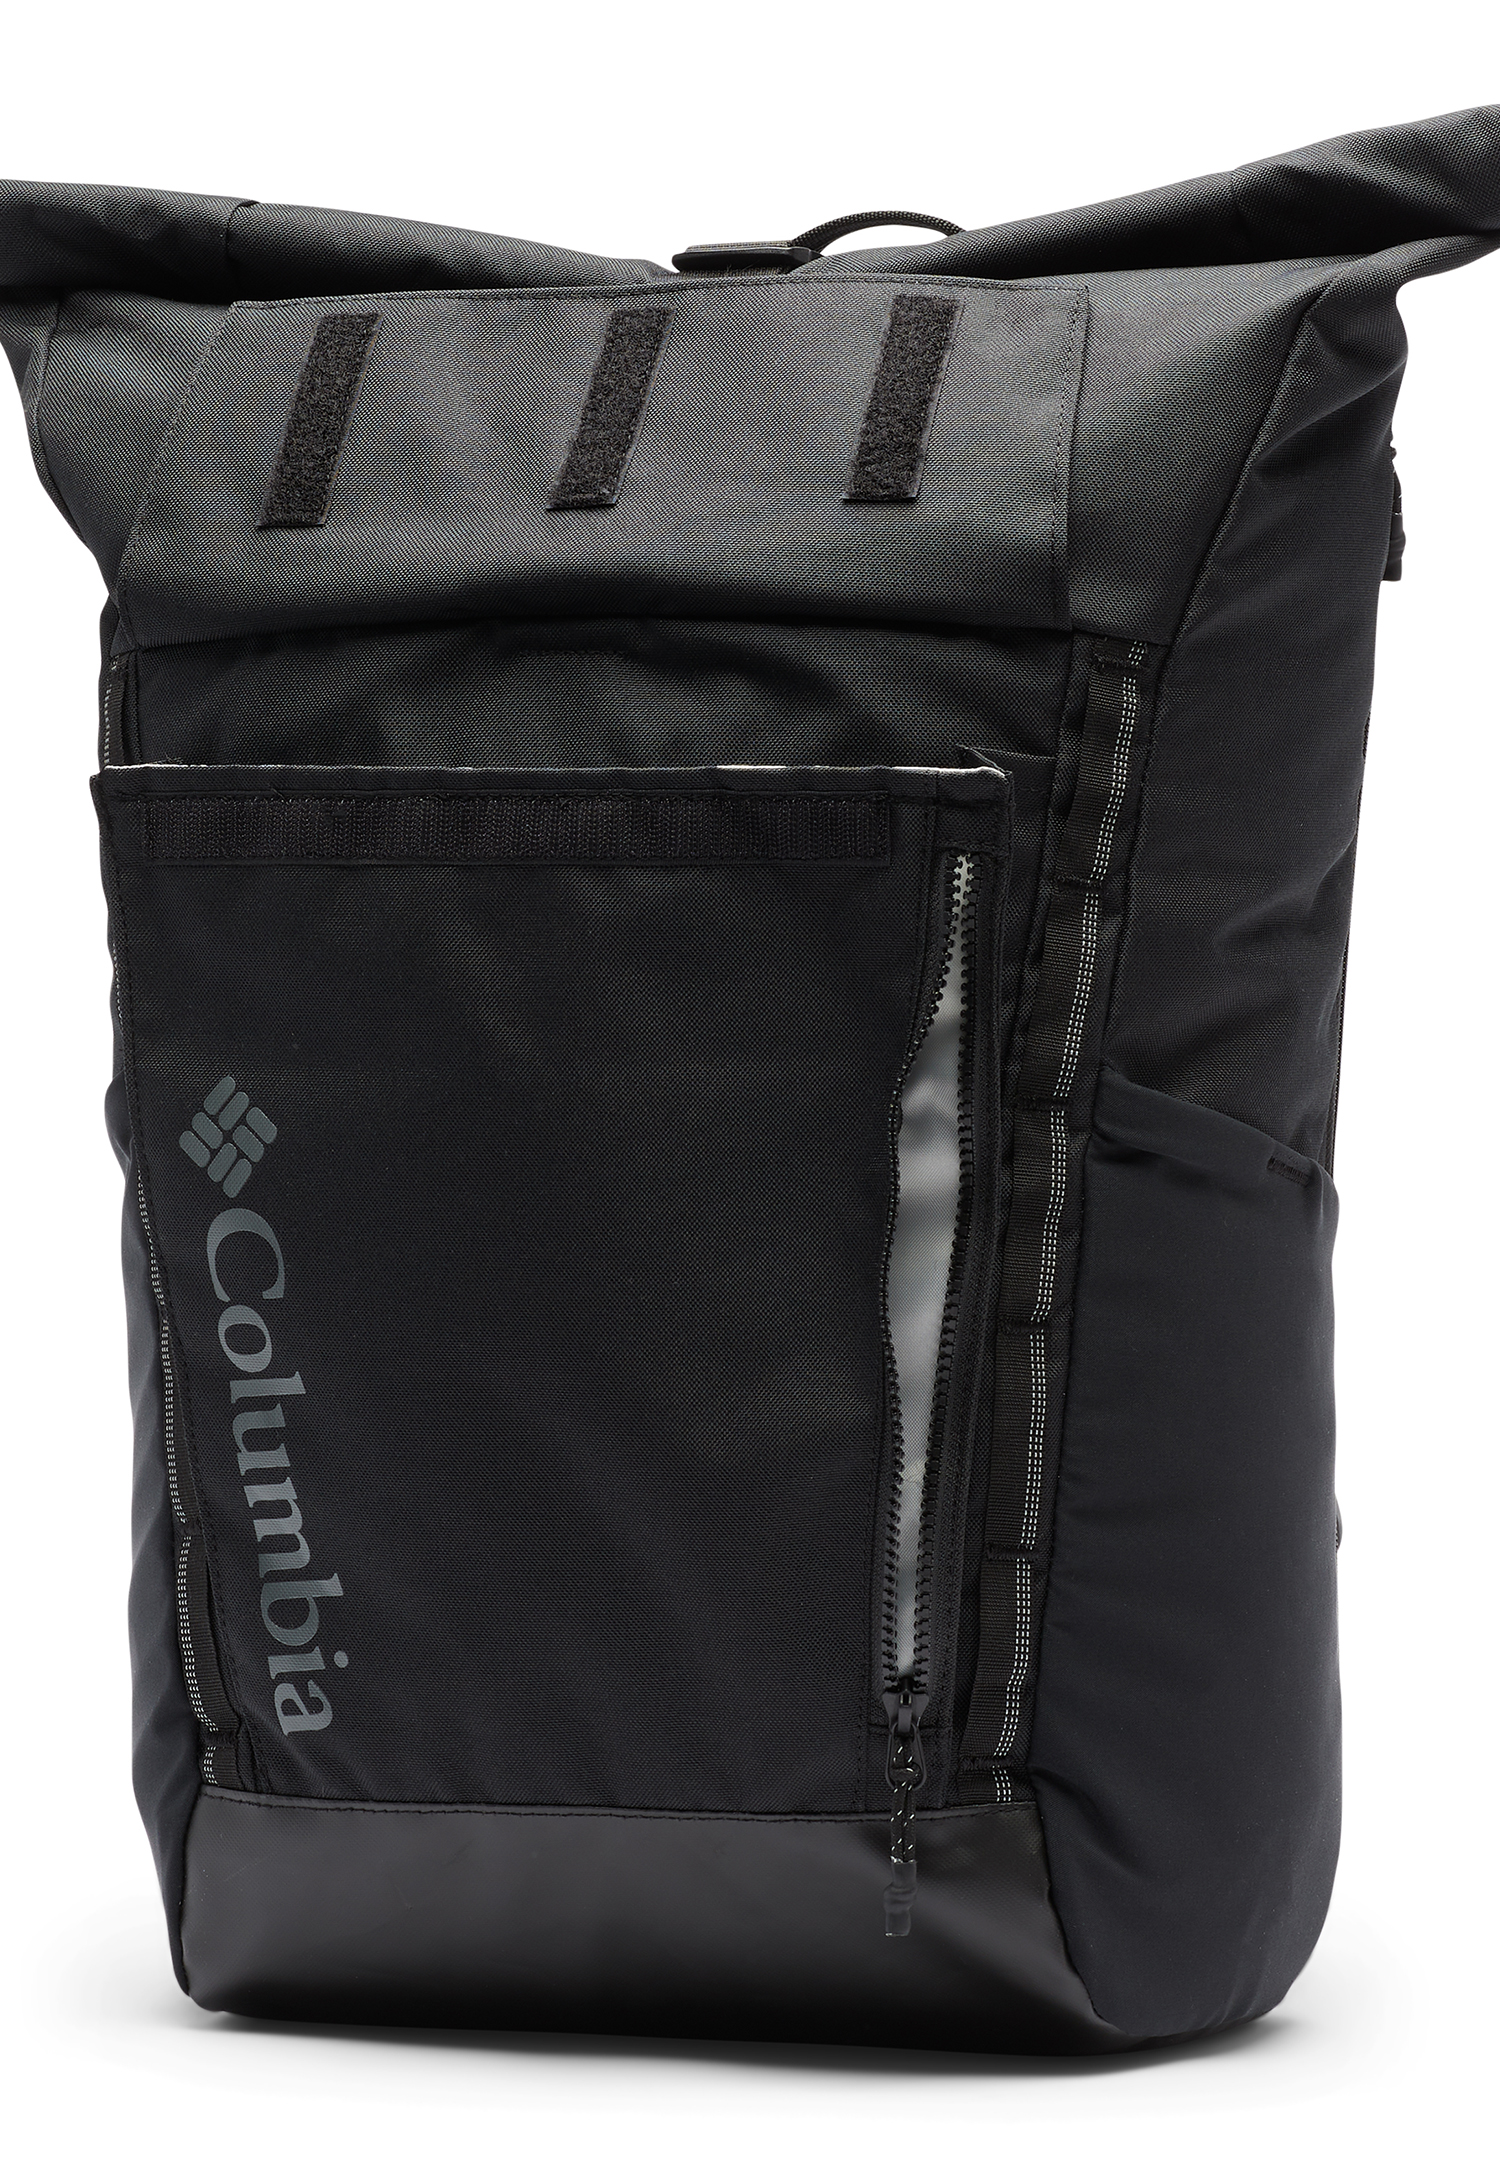 Columbia Convey II 27L Rolltop Backpack Unisex Rucksack 1991161 010 schwarz  